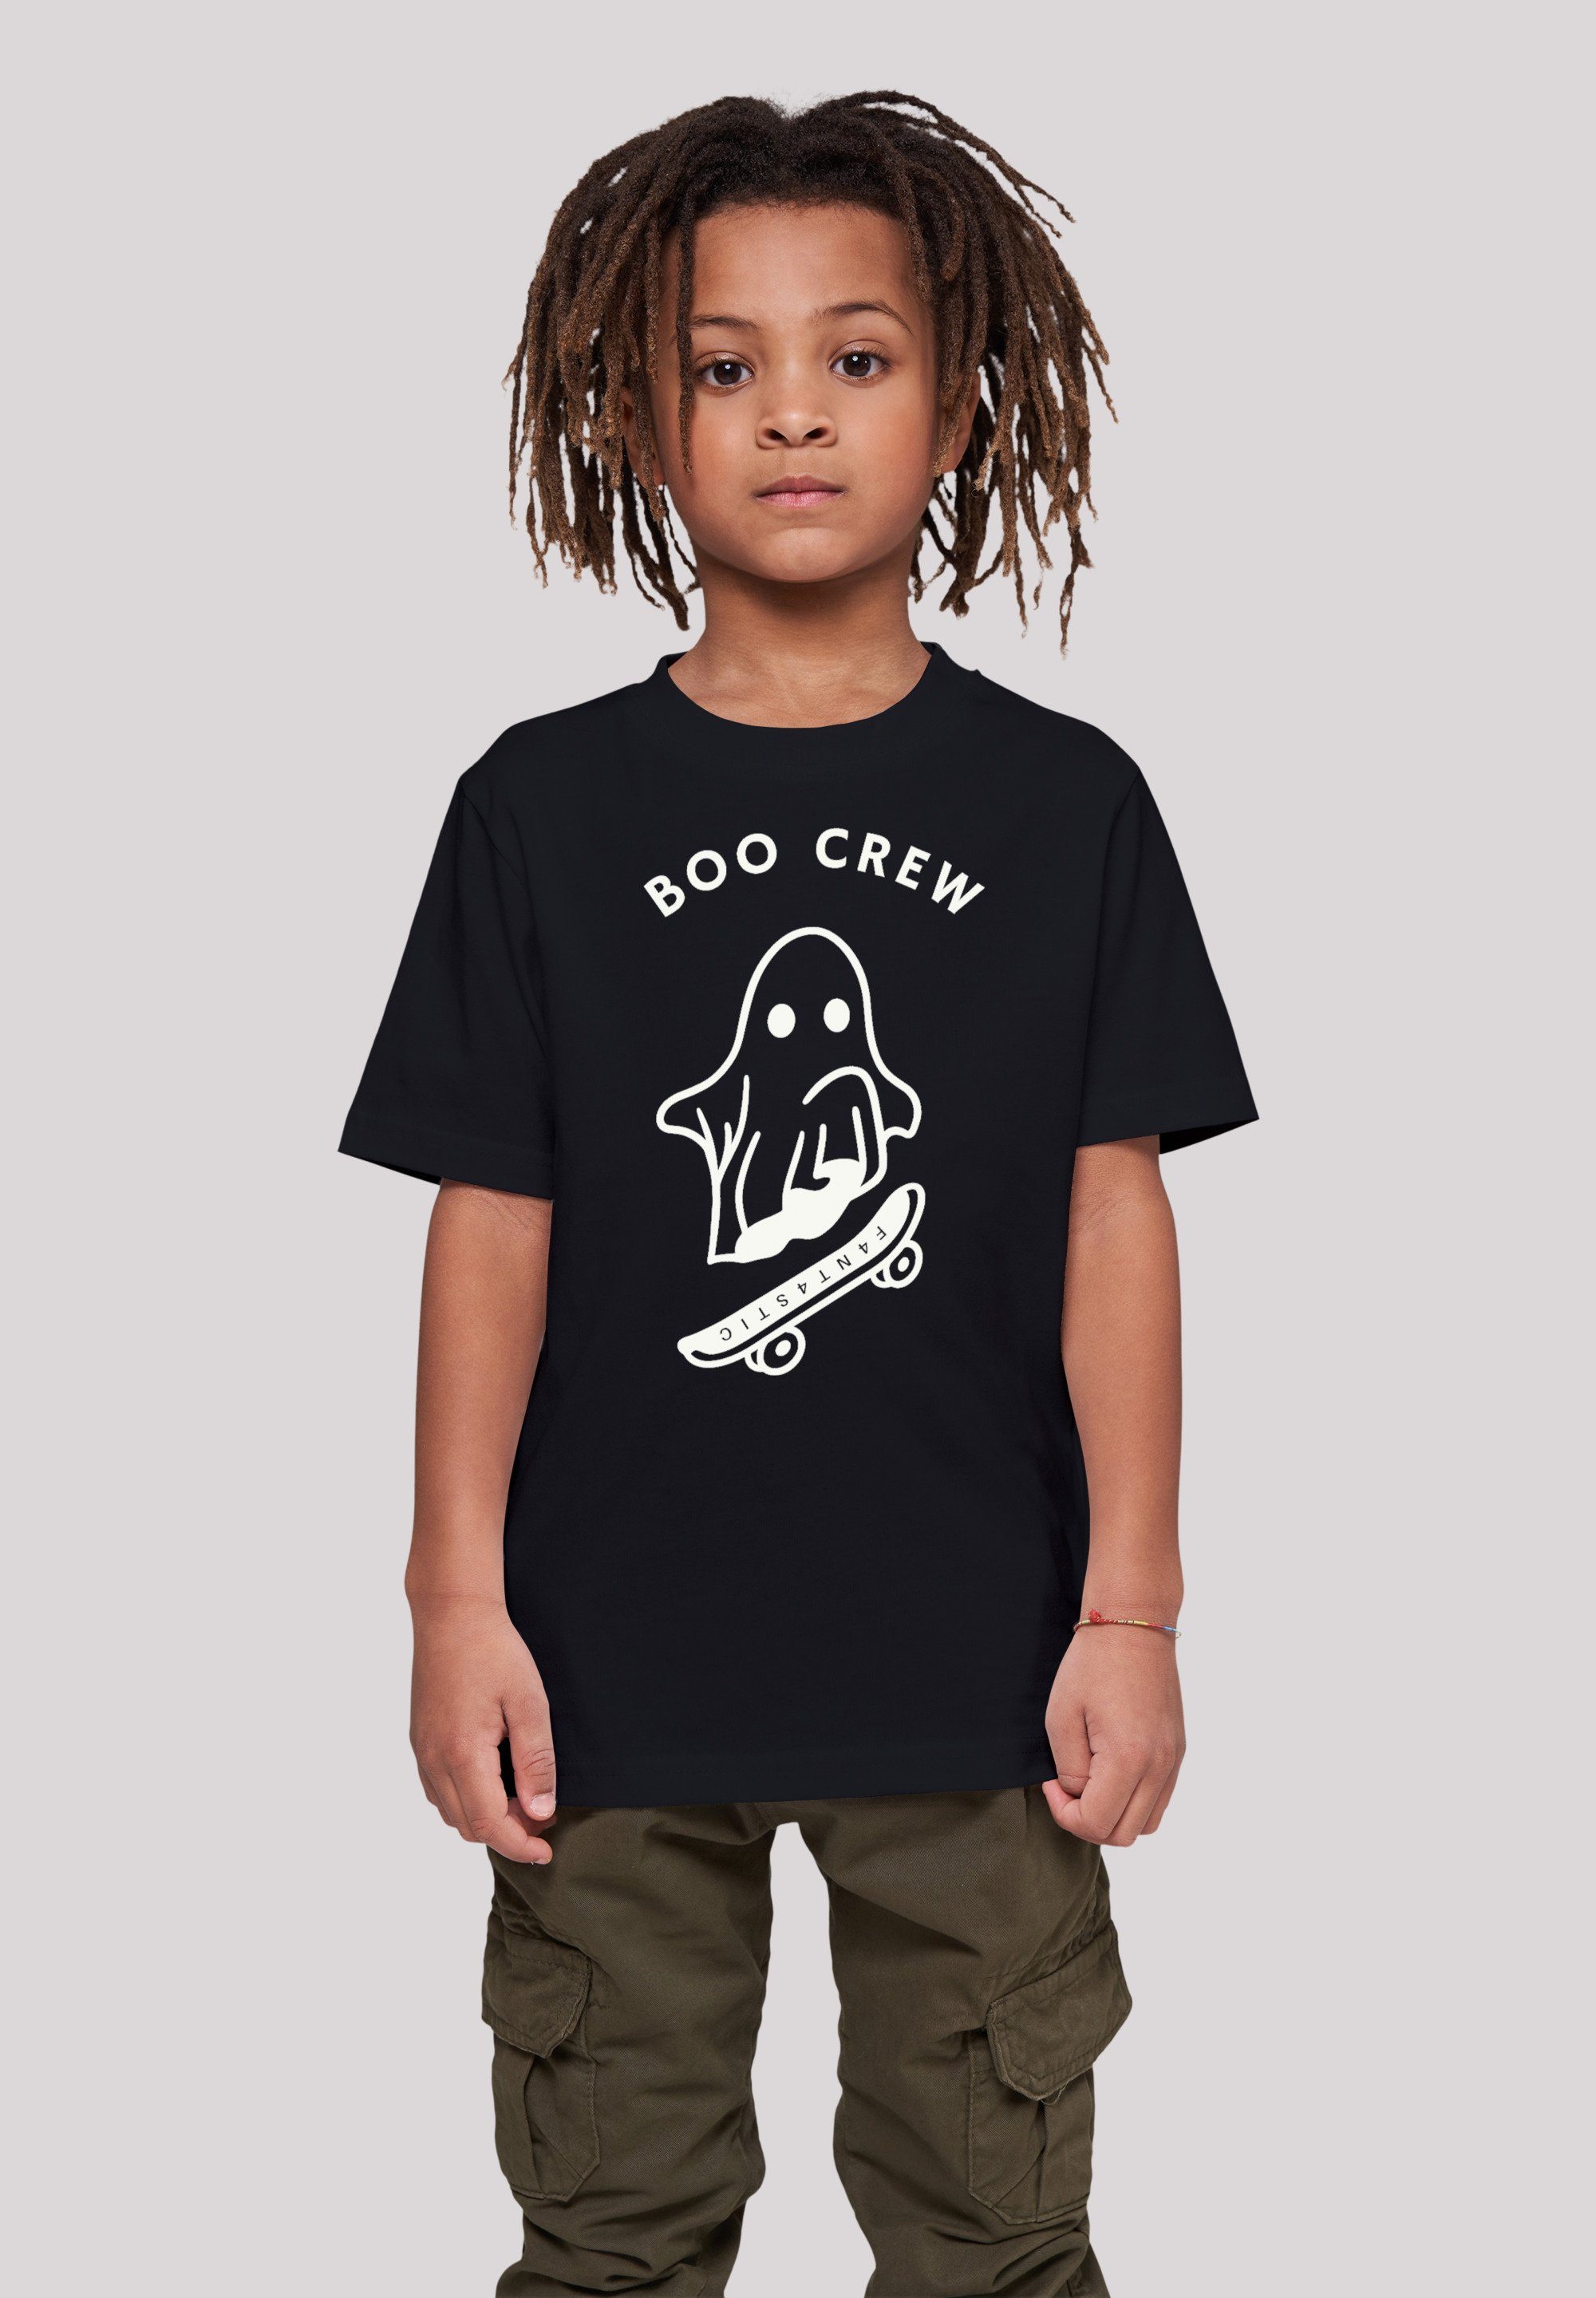 F4NT4STIC T-Shirt Boo Crew Halloween Kinder Lässiges Print, T-Shirt